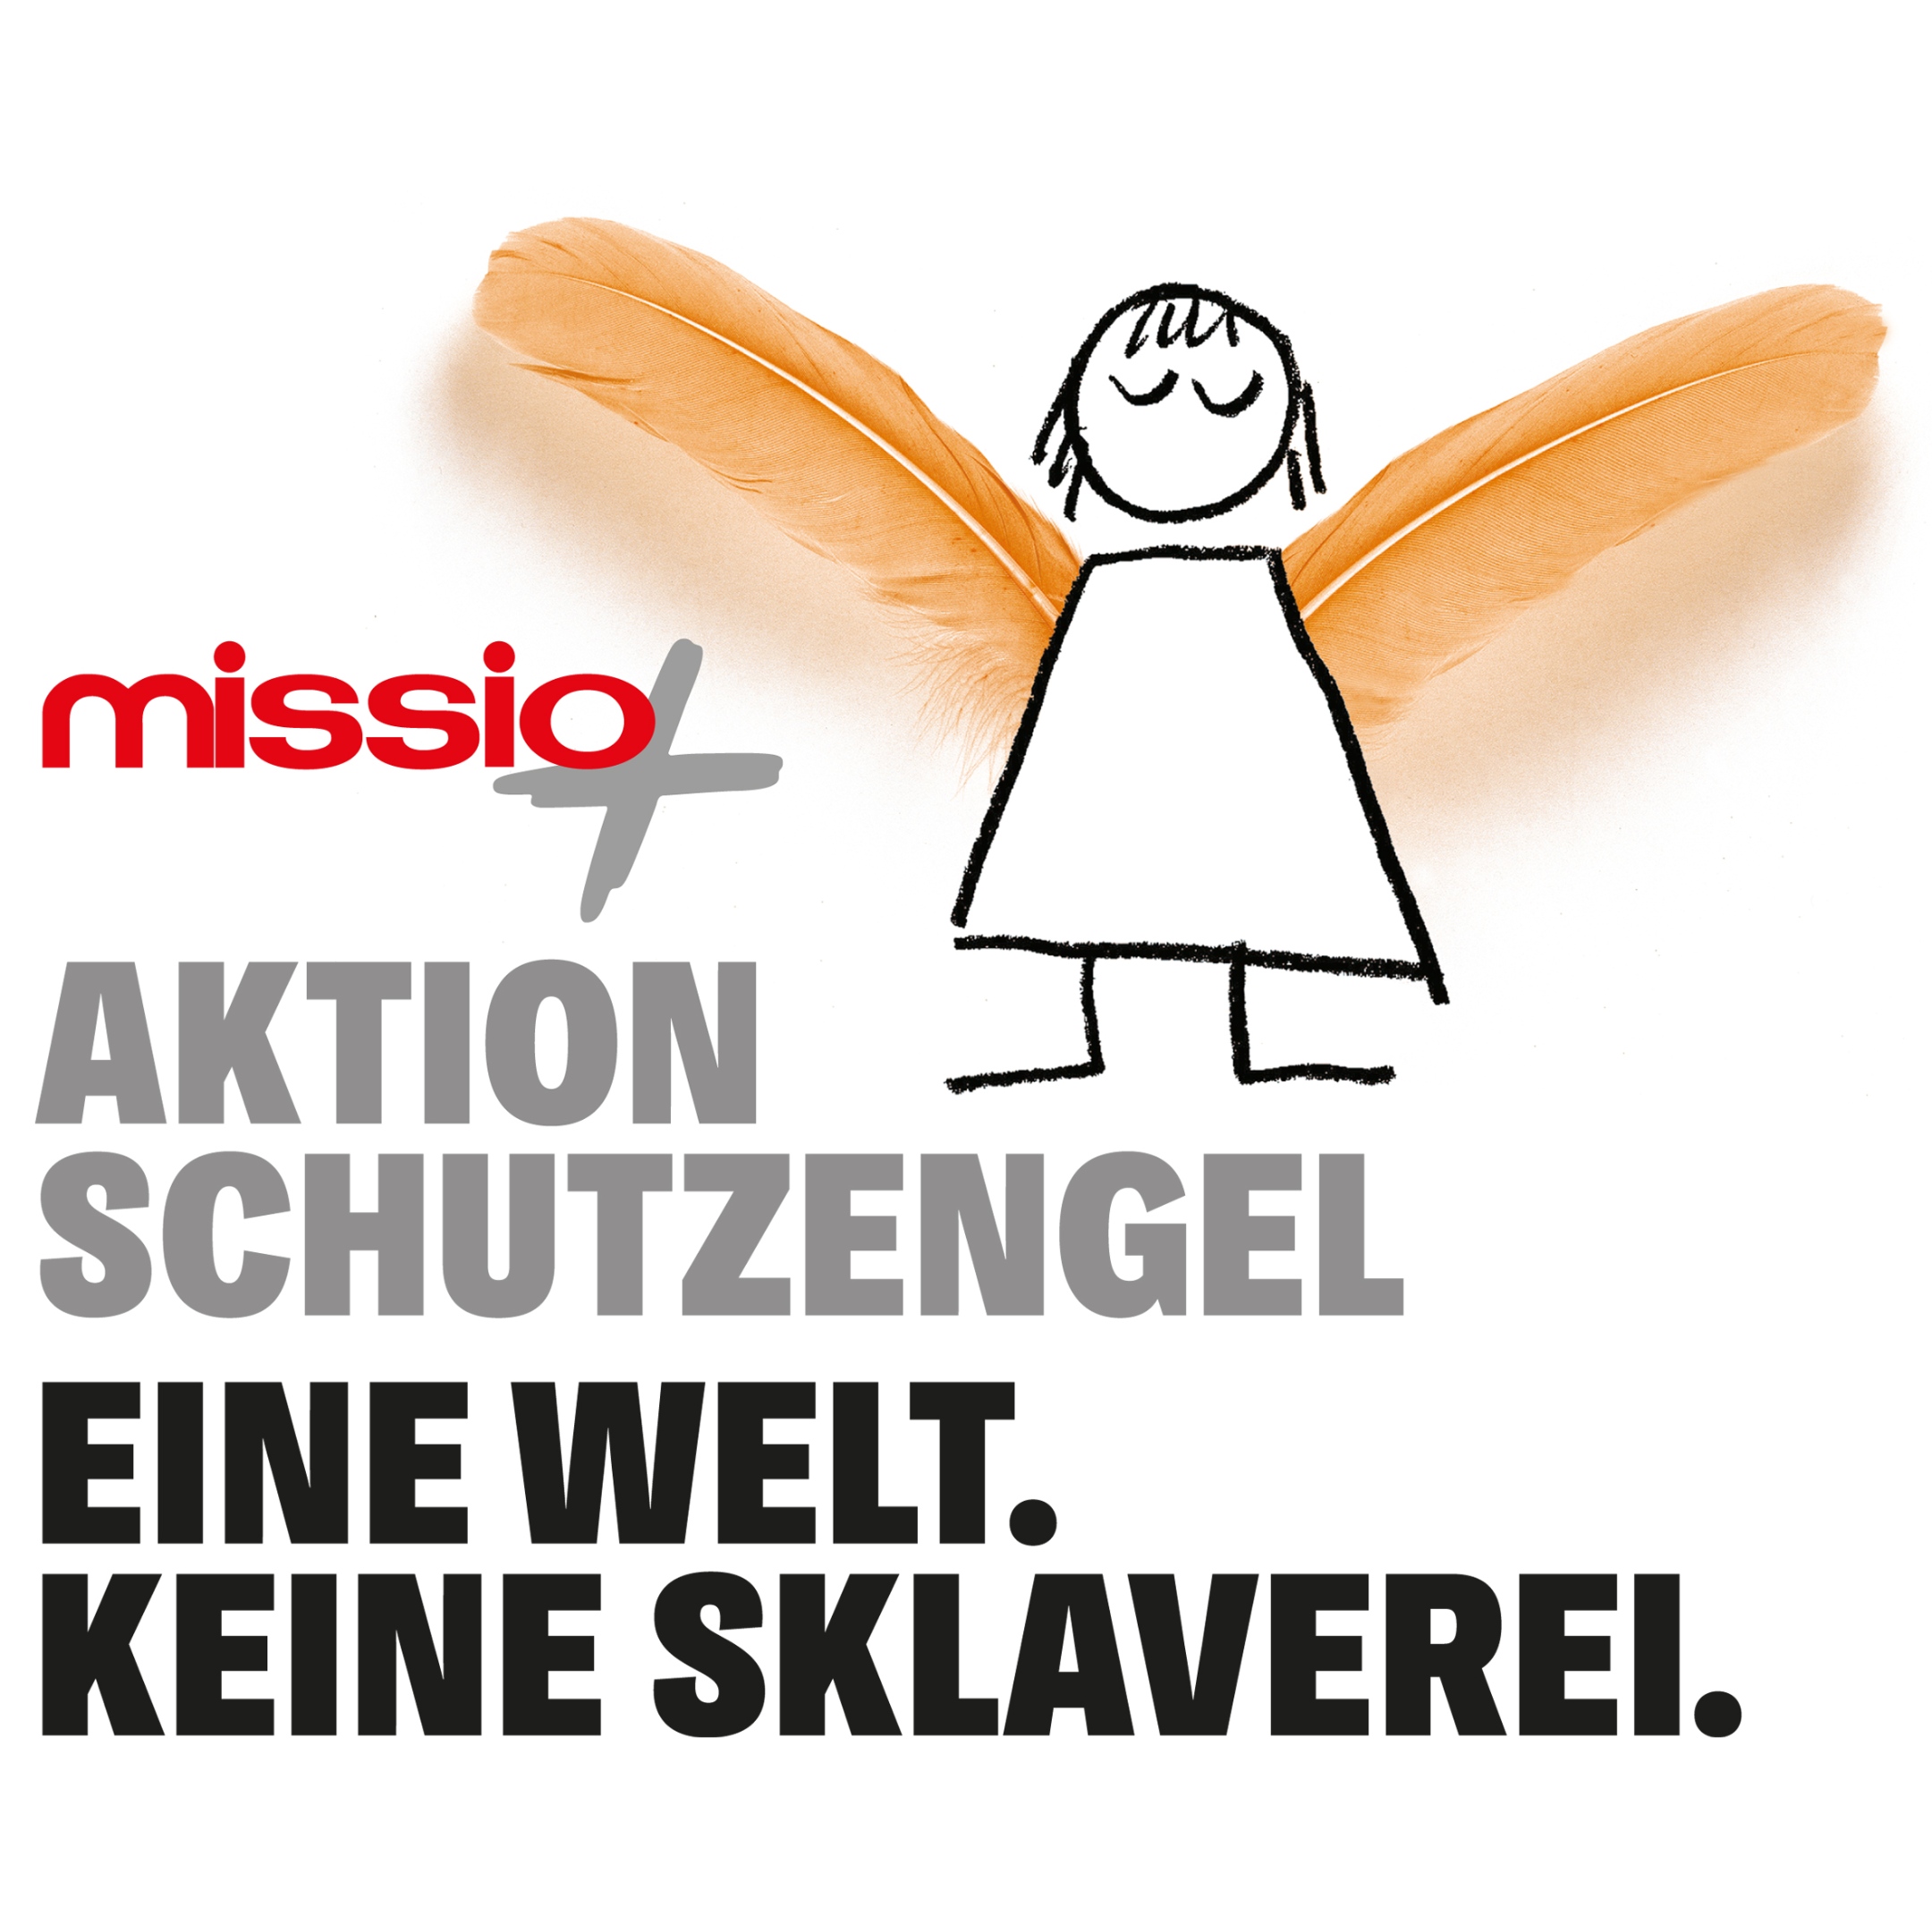 missio-hilft-aktion-schutzengel-eine-welt-keine-sklaverei-logo-2362x2362